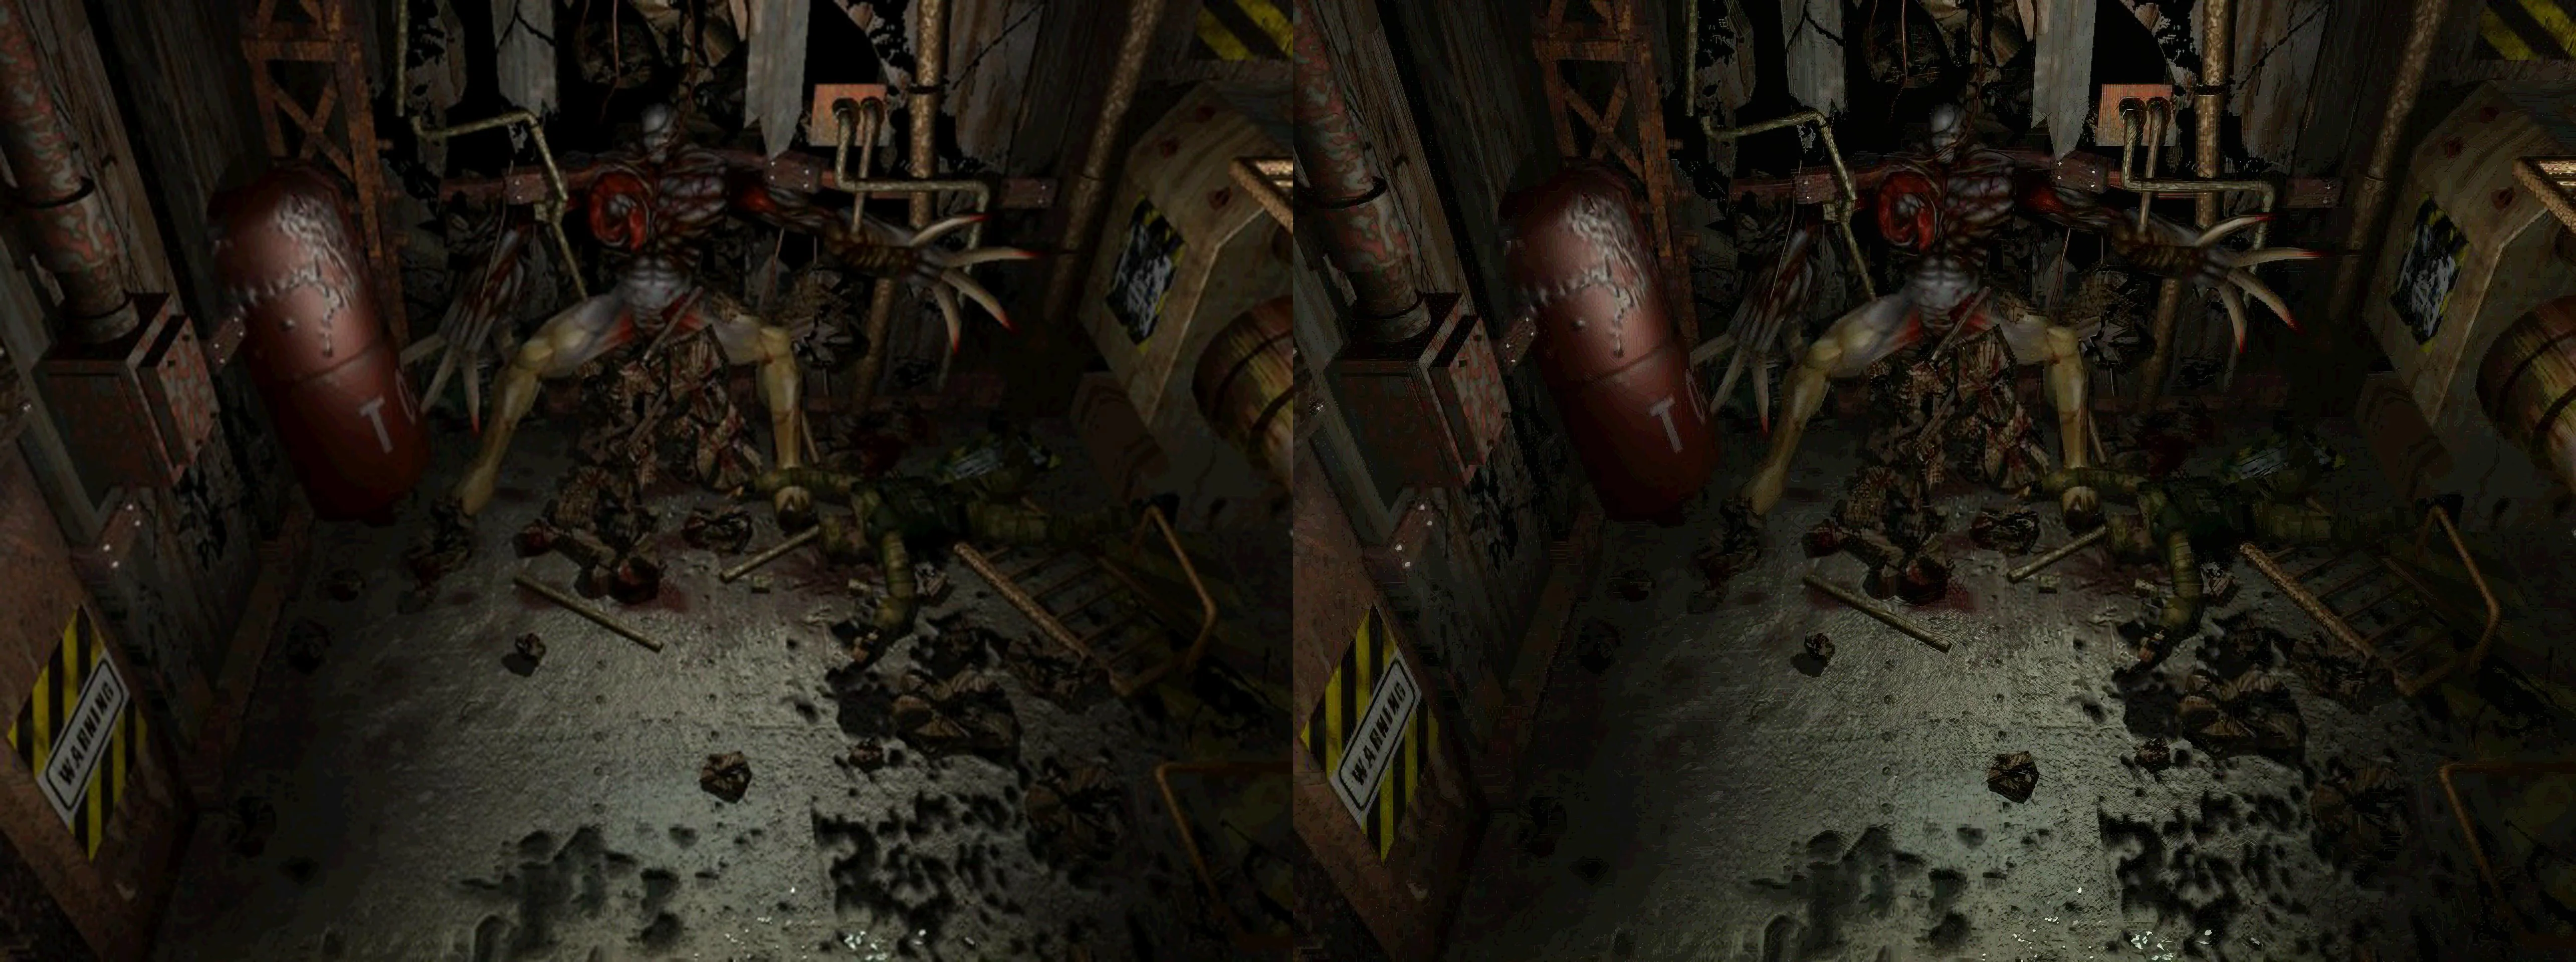 Энтузиаст с помощью нейросетей сделал задние фоны в Resident Evil 3: Nemesis еще красивее - фото 5